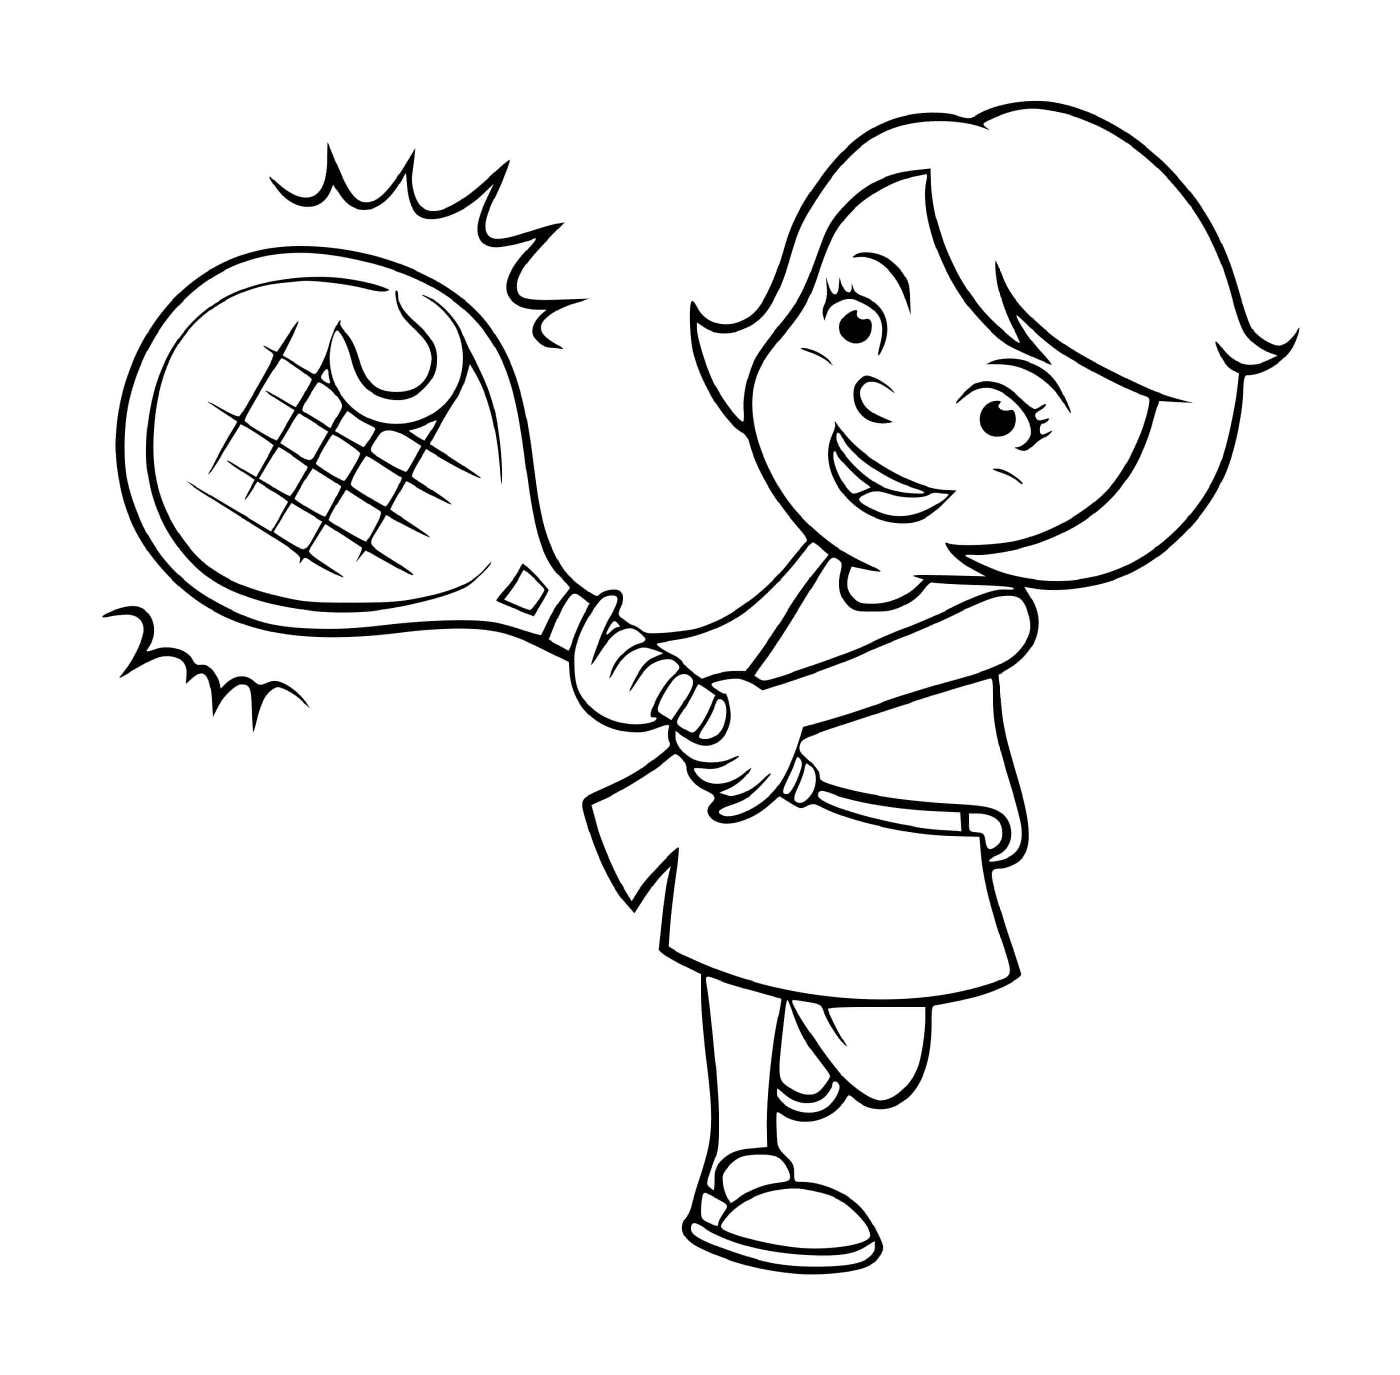  Una ragazza gioca a tennis con passione 